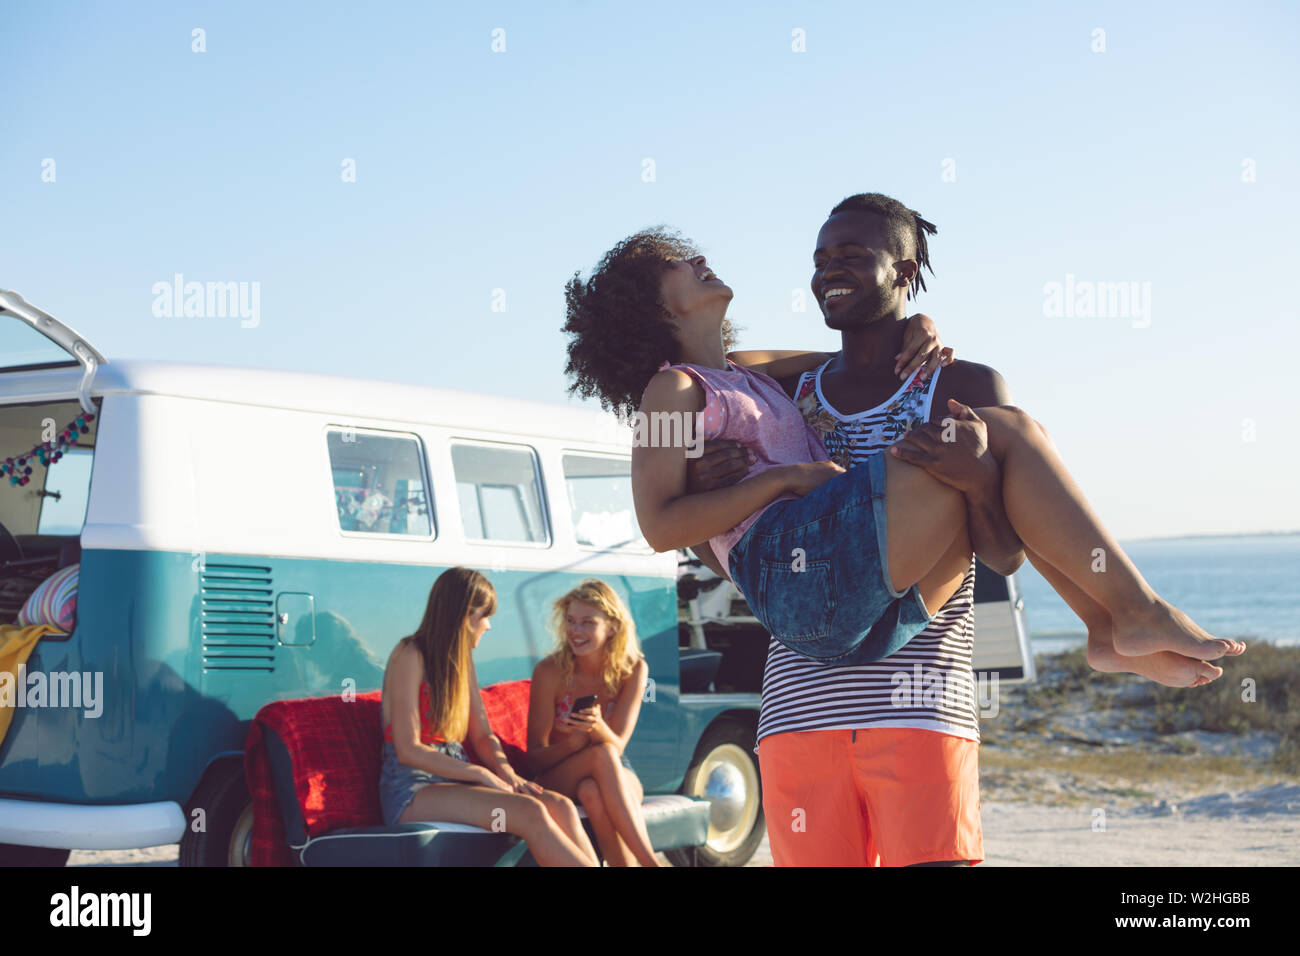 Femme Homme tenant dans ses bras près de camping-van at beach Banque D'Images